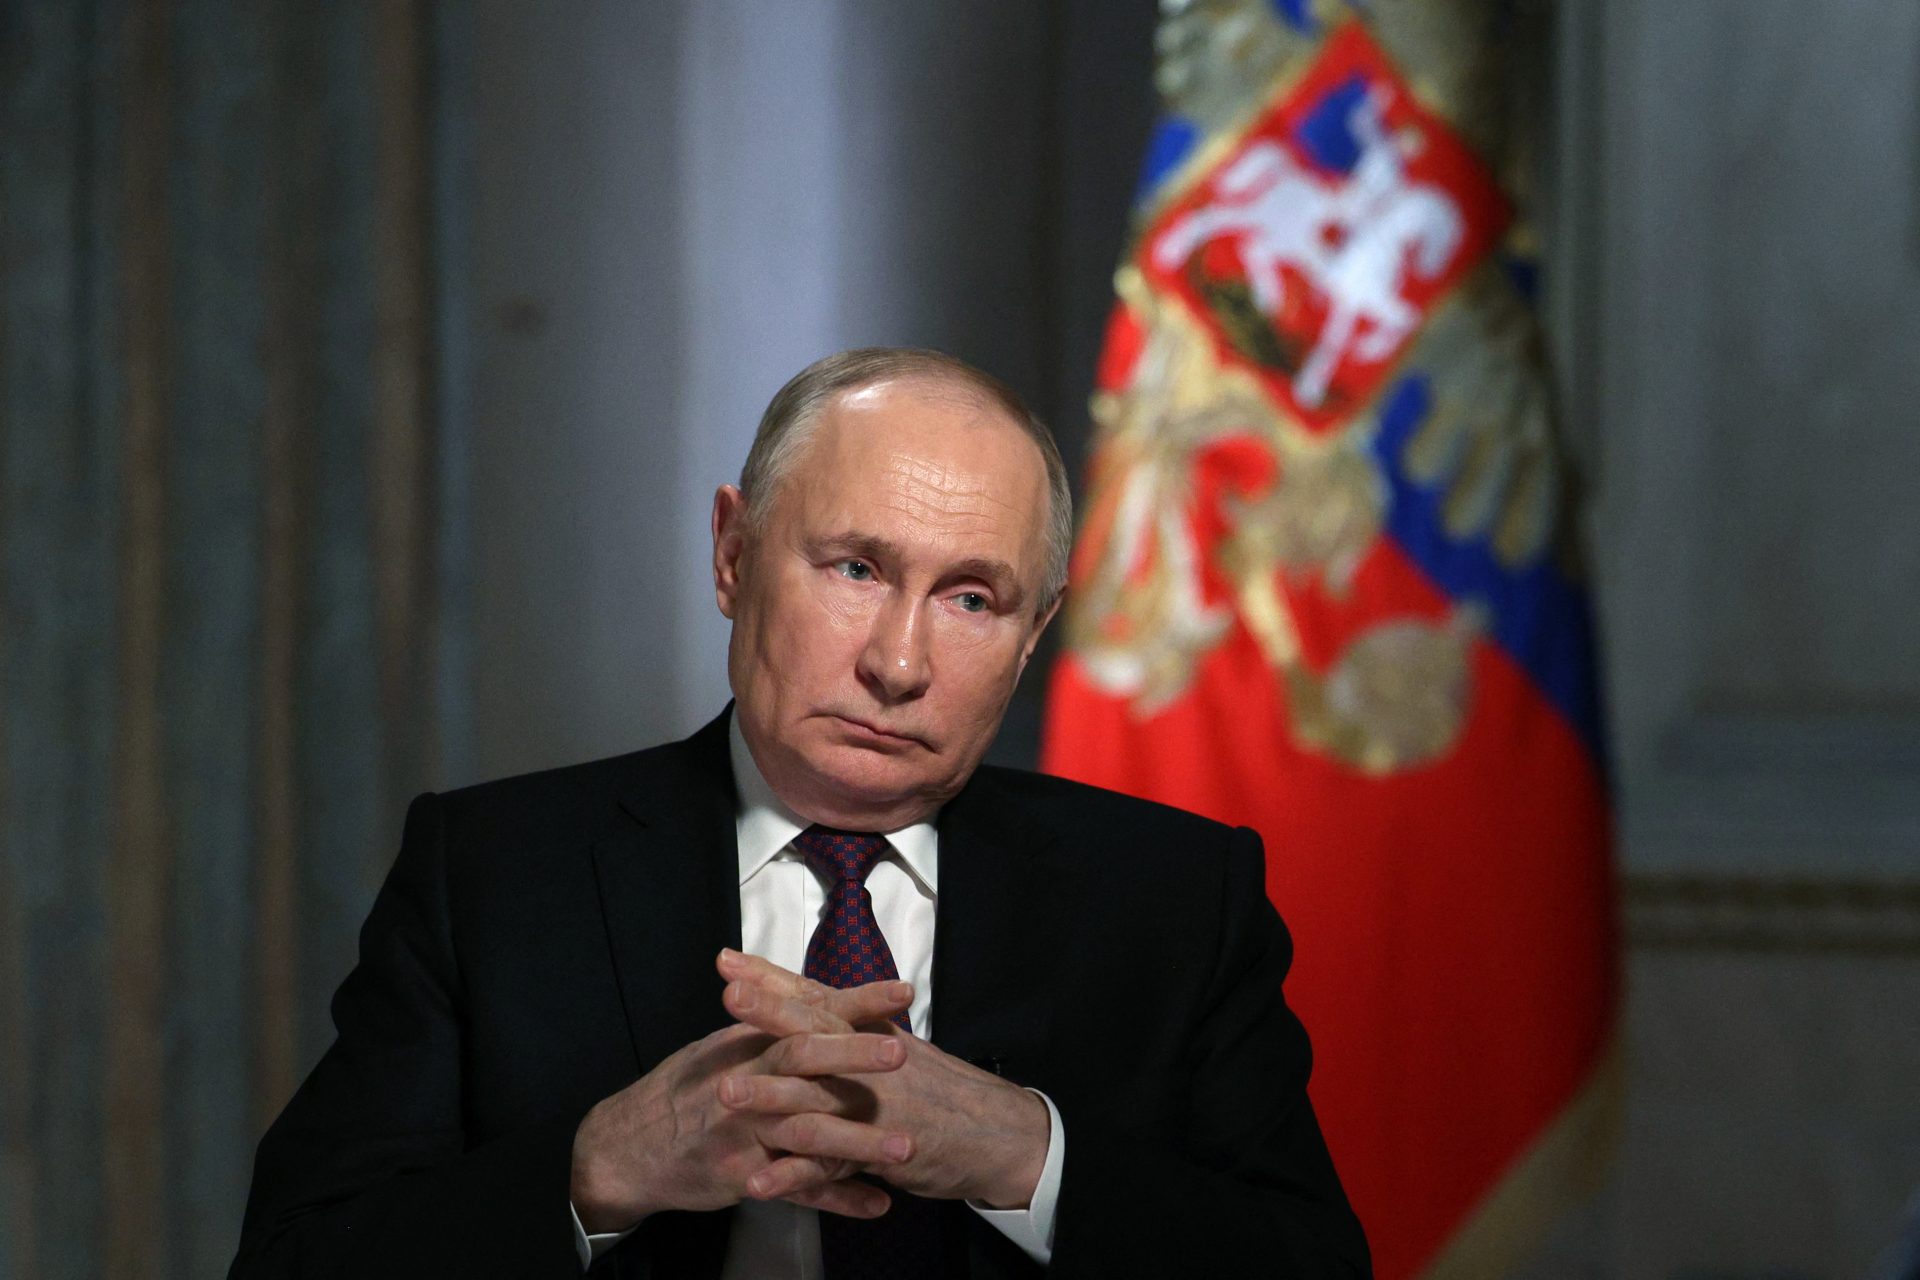 La Russie tente d'affaiblir les États-Unis et l'Occident, comme le révèle un document secret